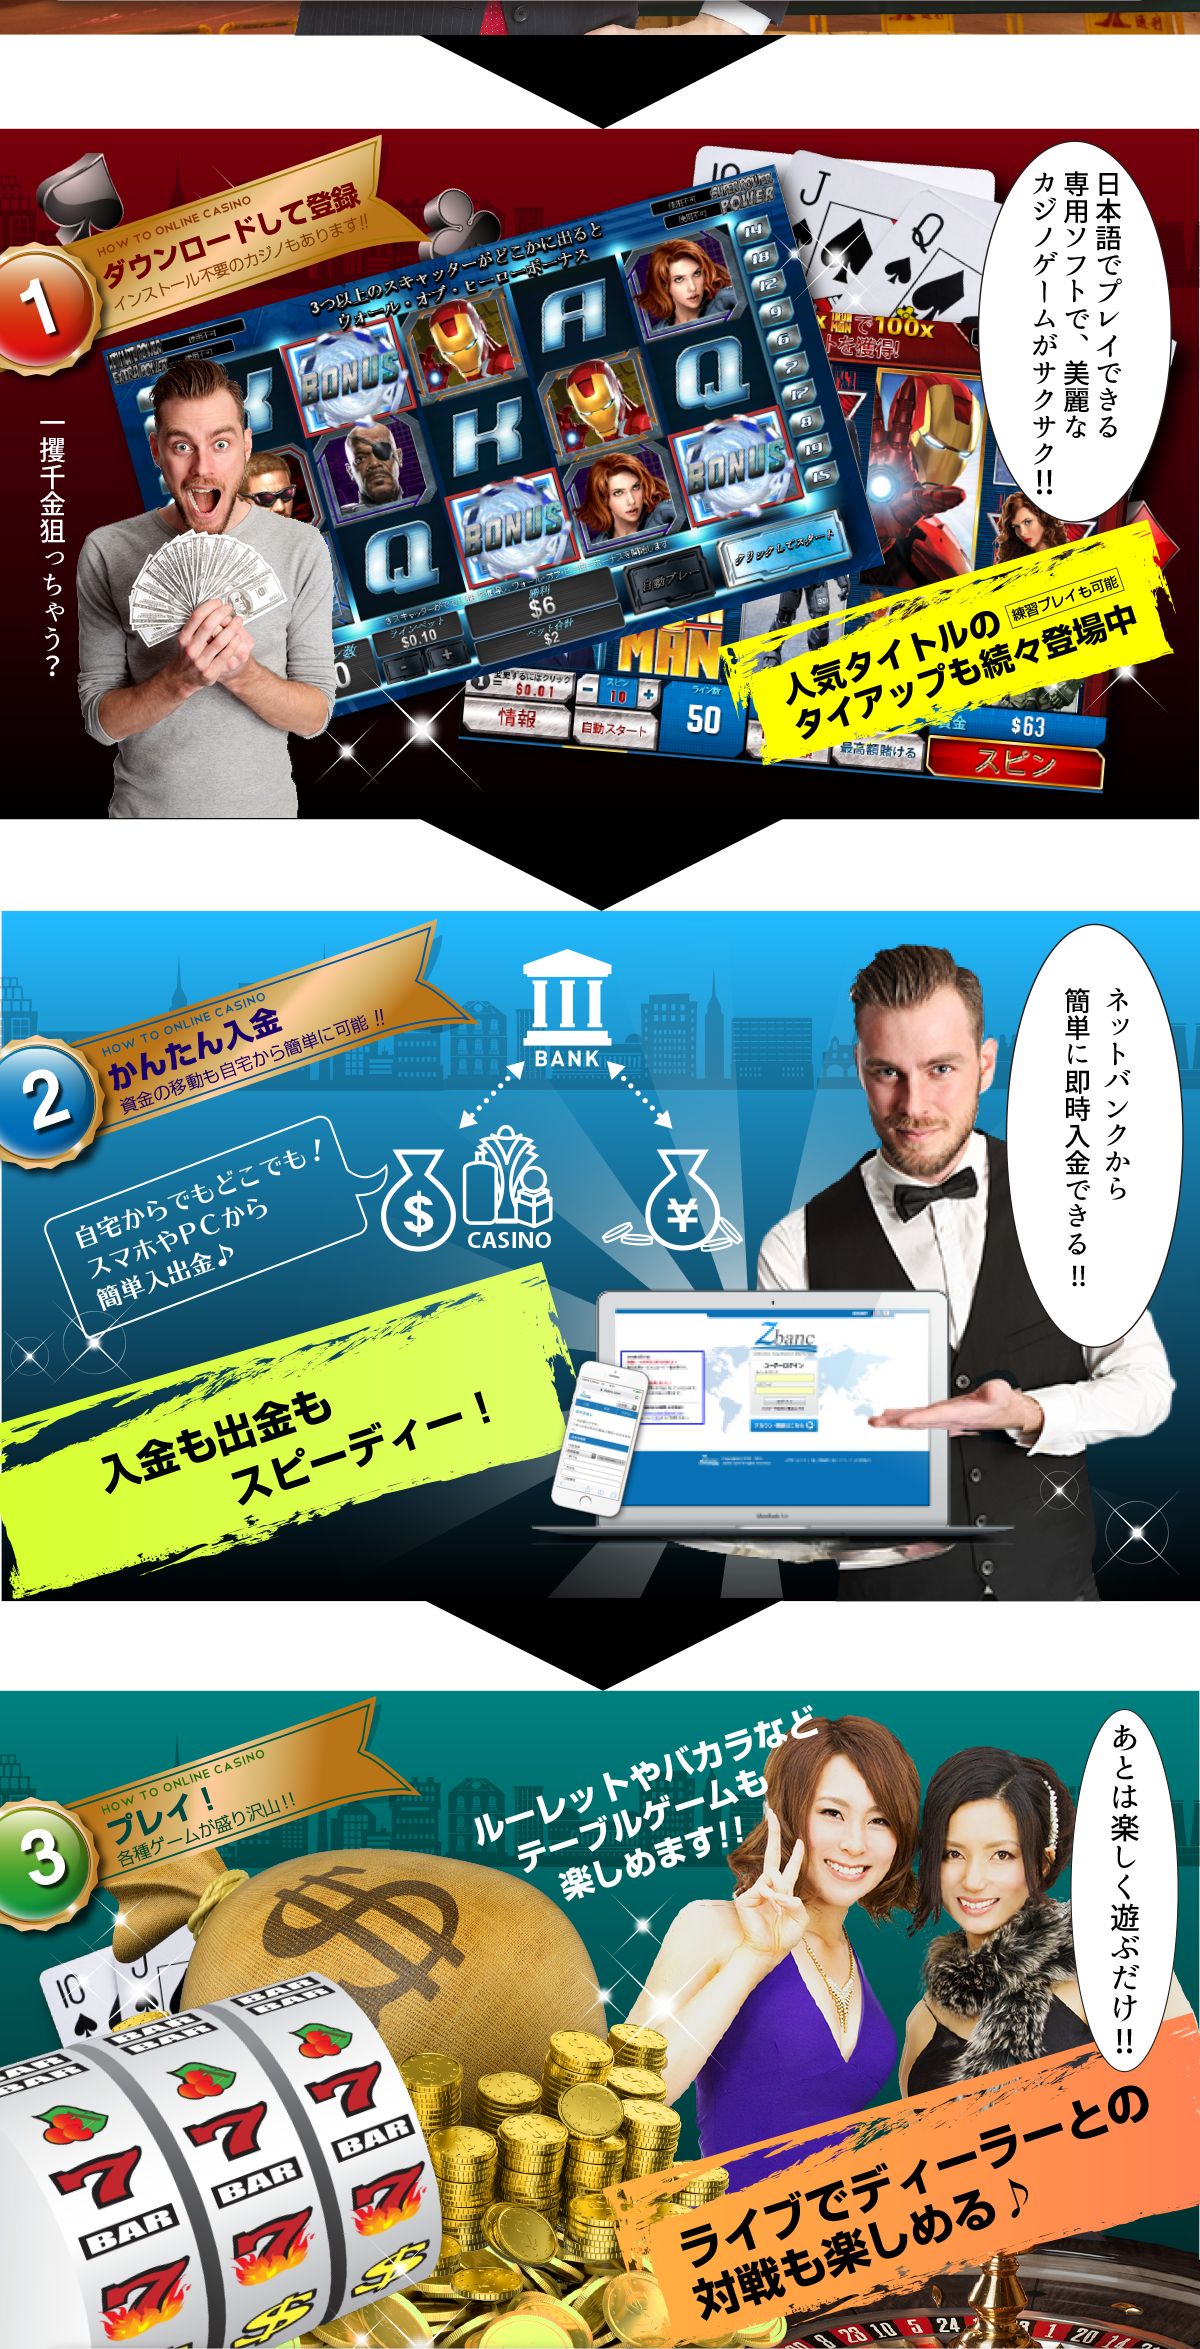 日本語でプレイできる専用ソフト、ネットバンクから簡単即時入金